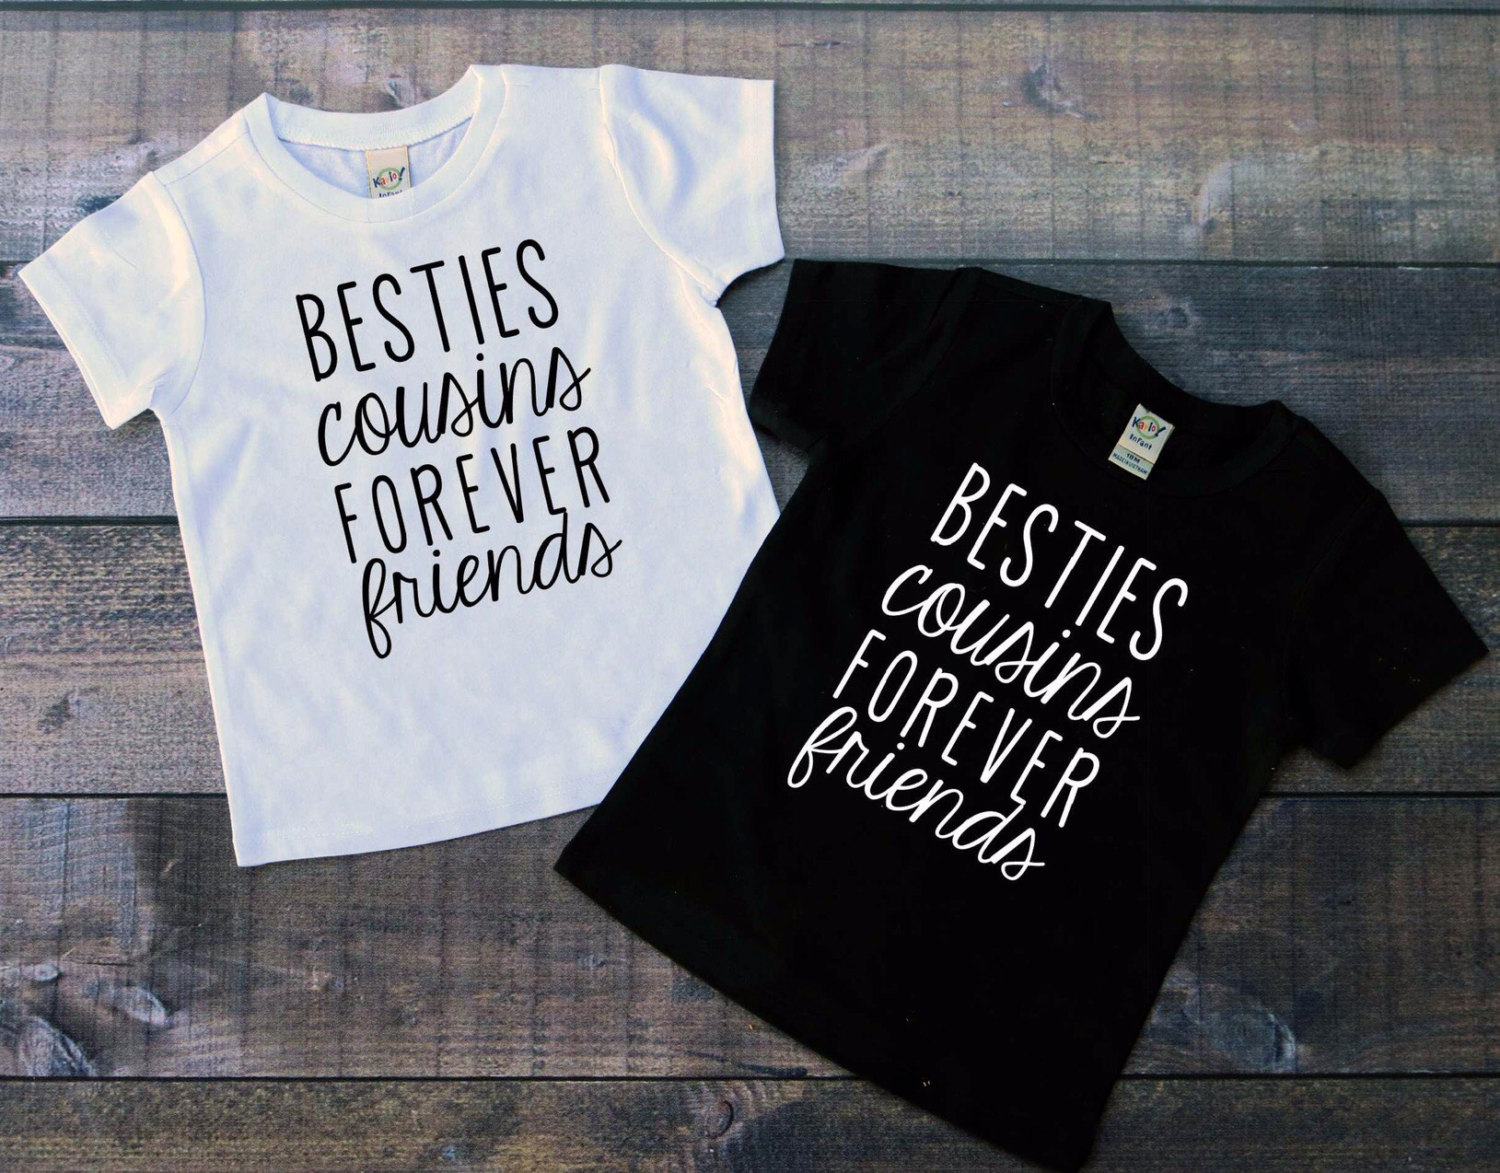 Cousins shirt Bestie shirt best friend shirt shirts for